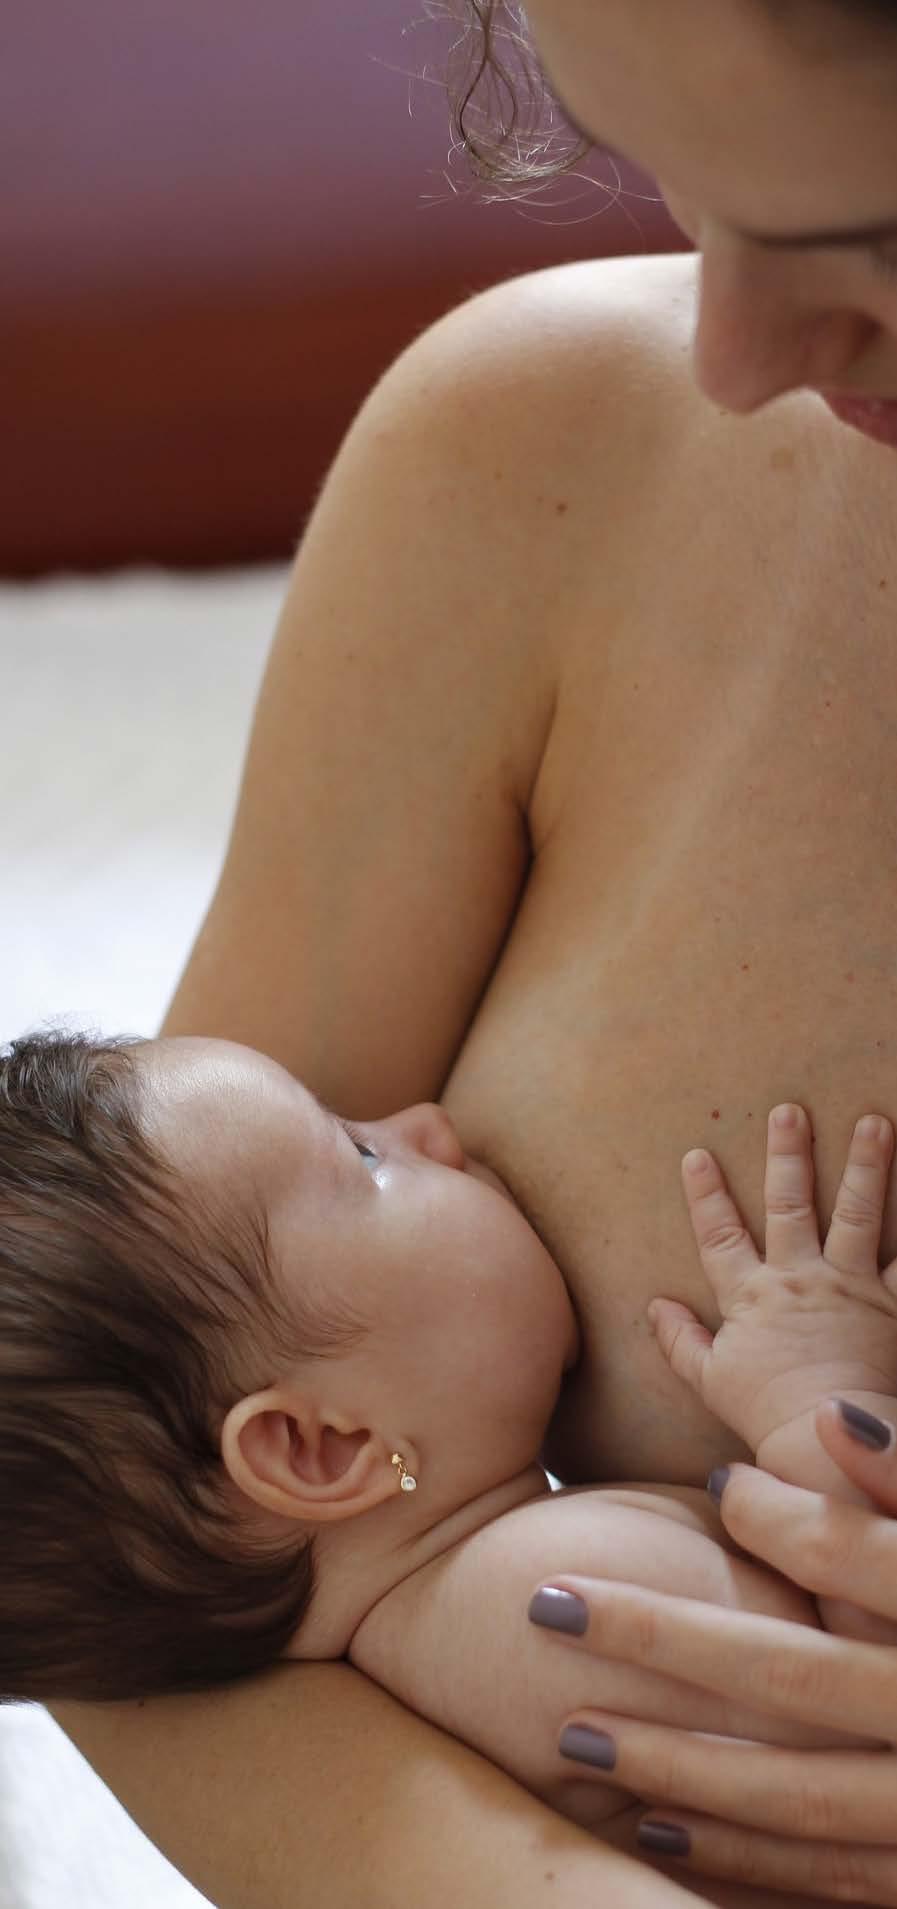 12 La Introducción leche materna es lo mejor para tu bebé, porque... Le aporta proteínas adecuadas para su desarrollo, tanto en cantidad como en calidad y composición. Contiene anticuerpos.